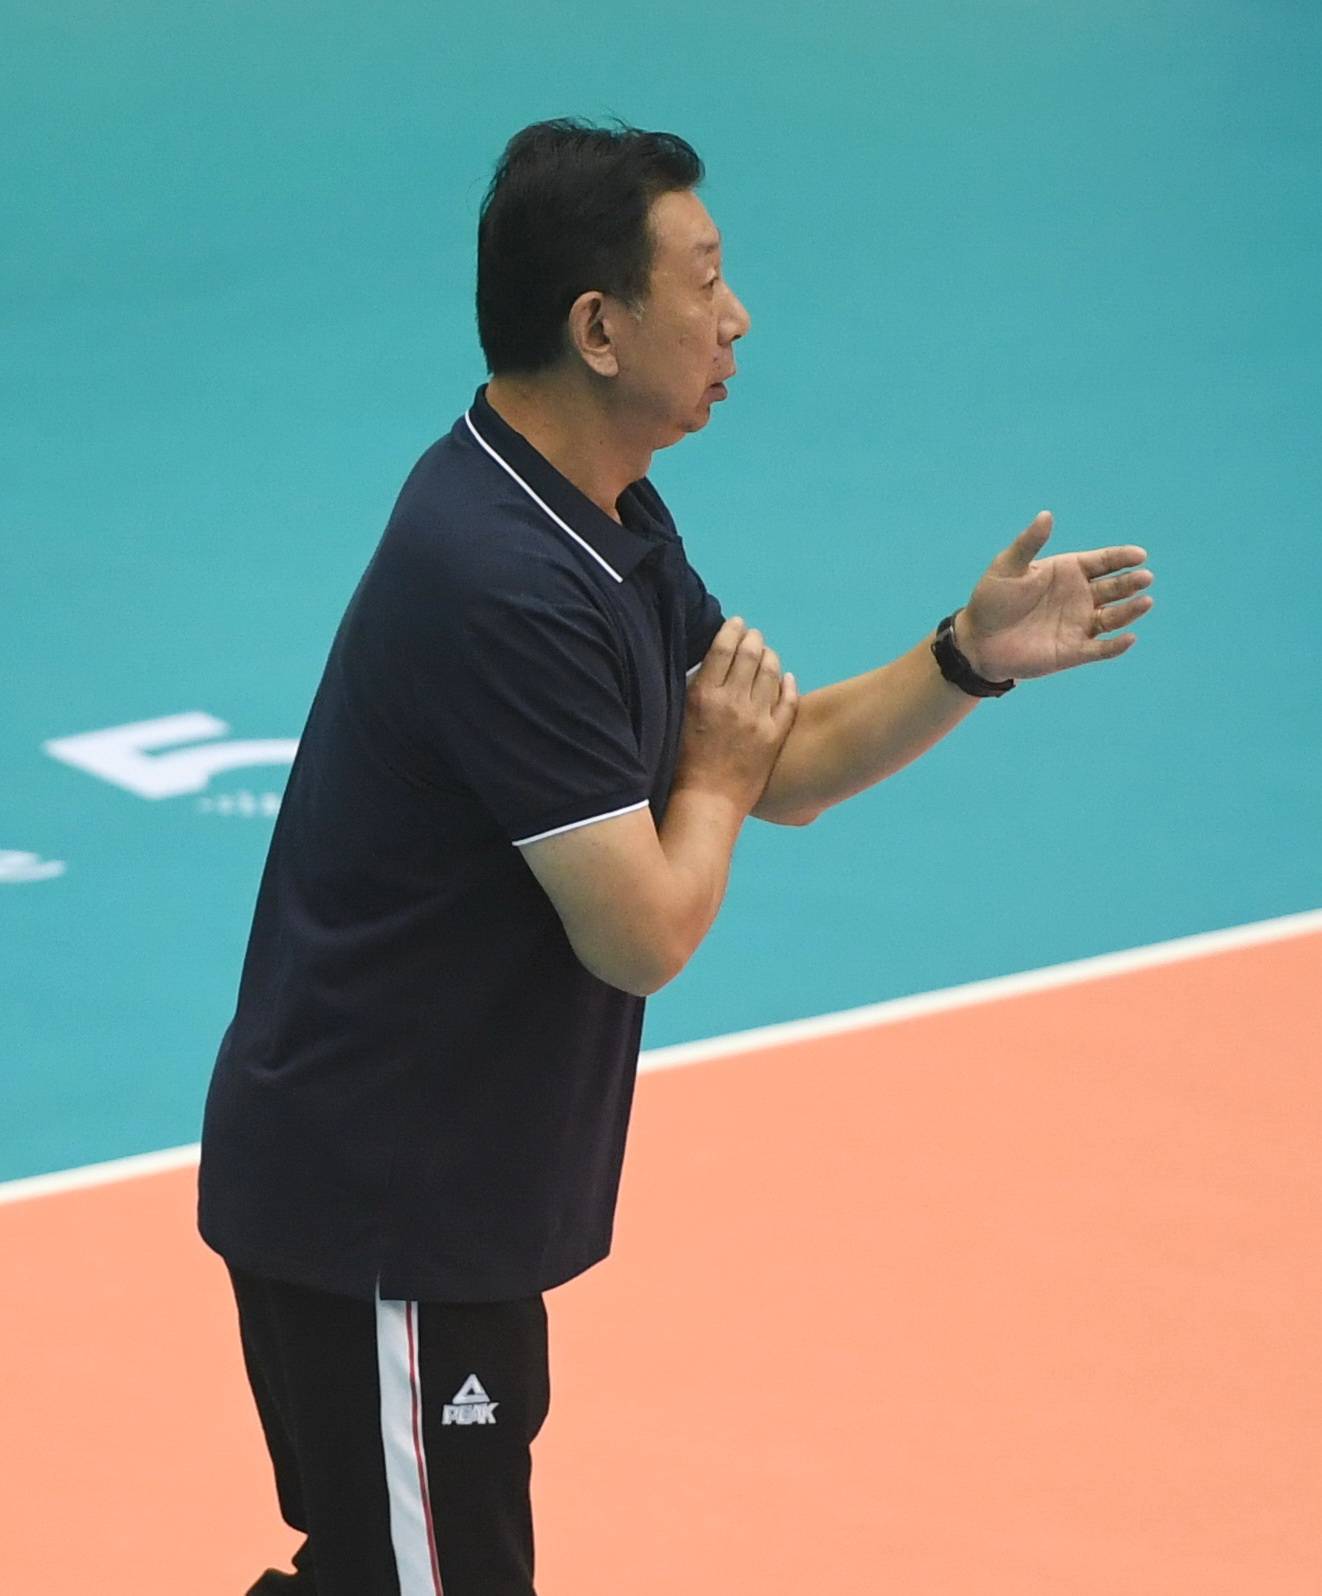 8月28日,天津食品集团队球员王翔宇在比赛中扣球